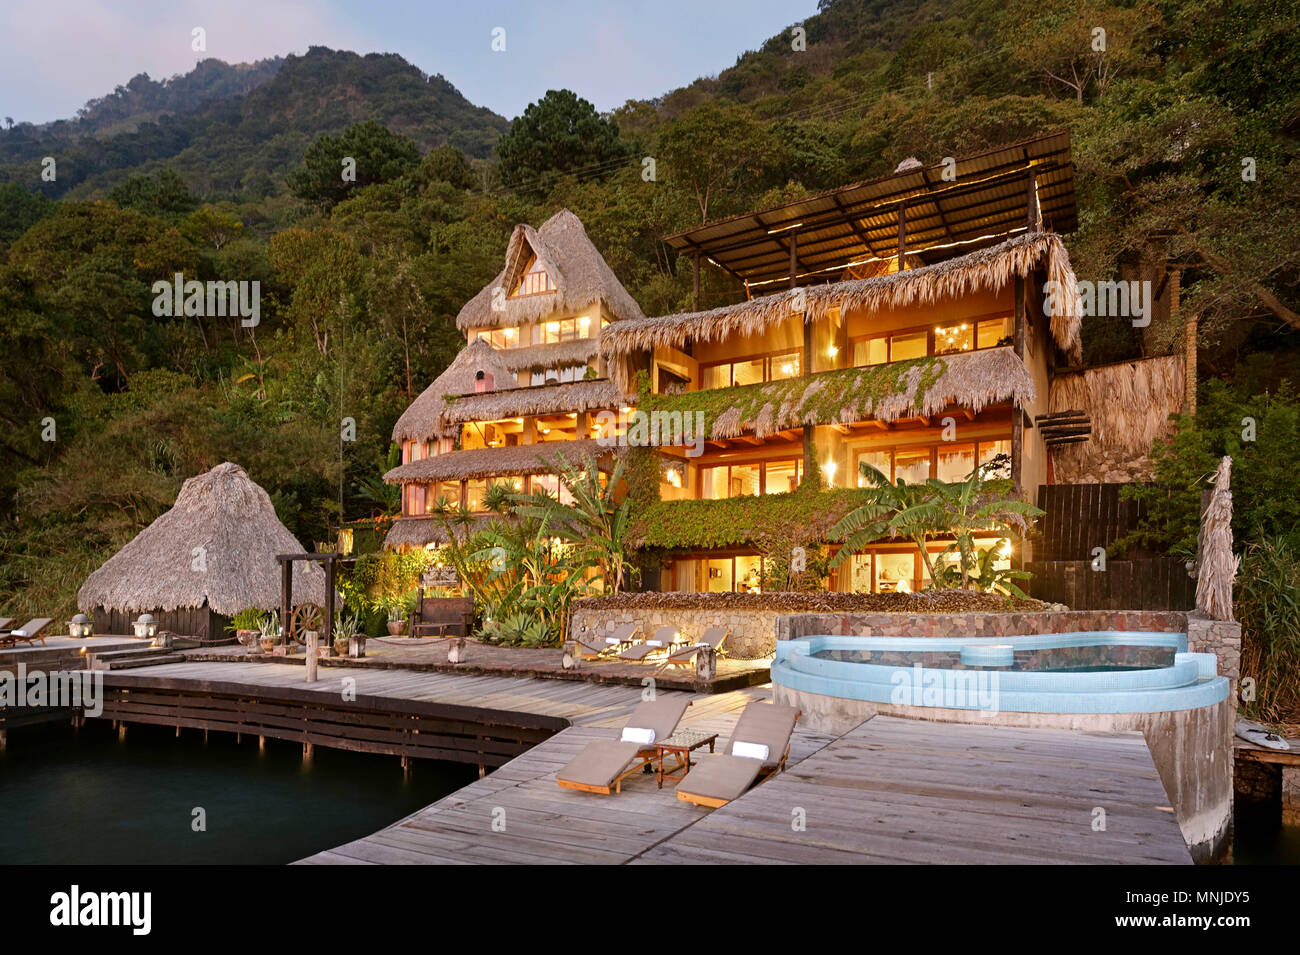 Hotel and tourist resort on shore of Lake Atitlan, Guatemala Stock Photo